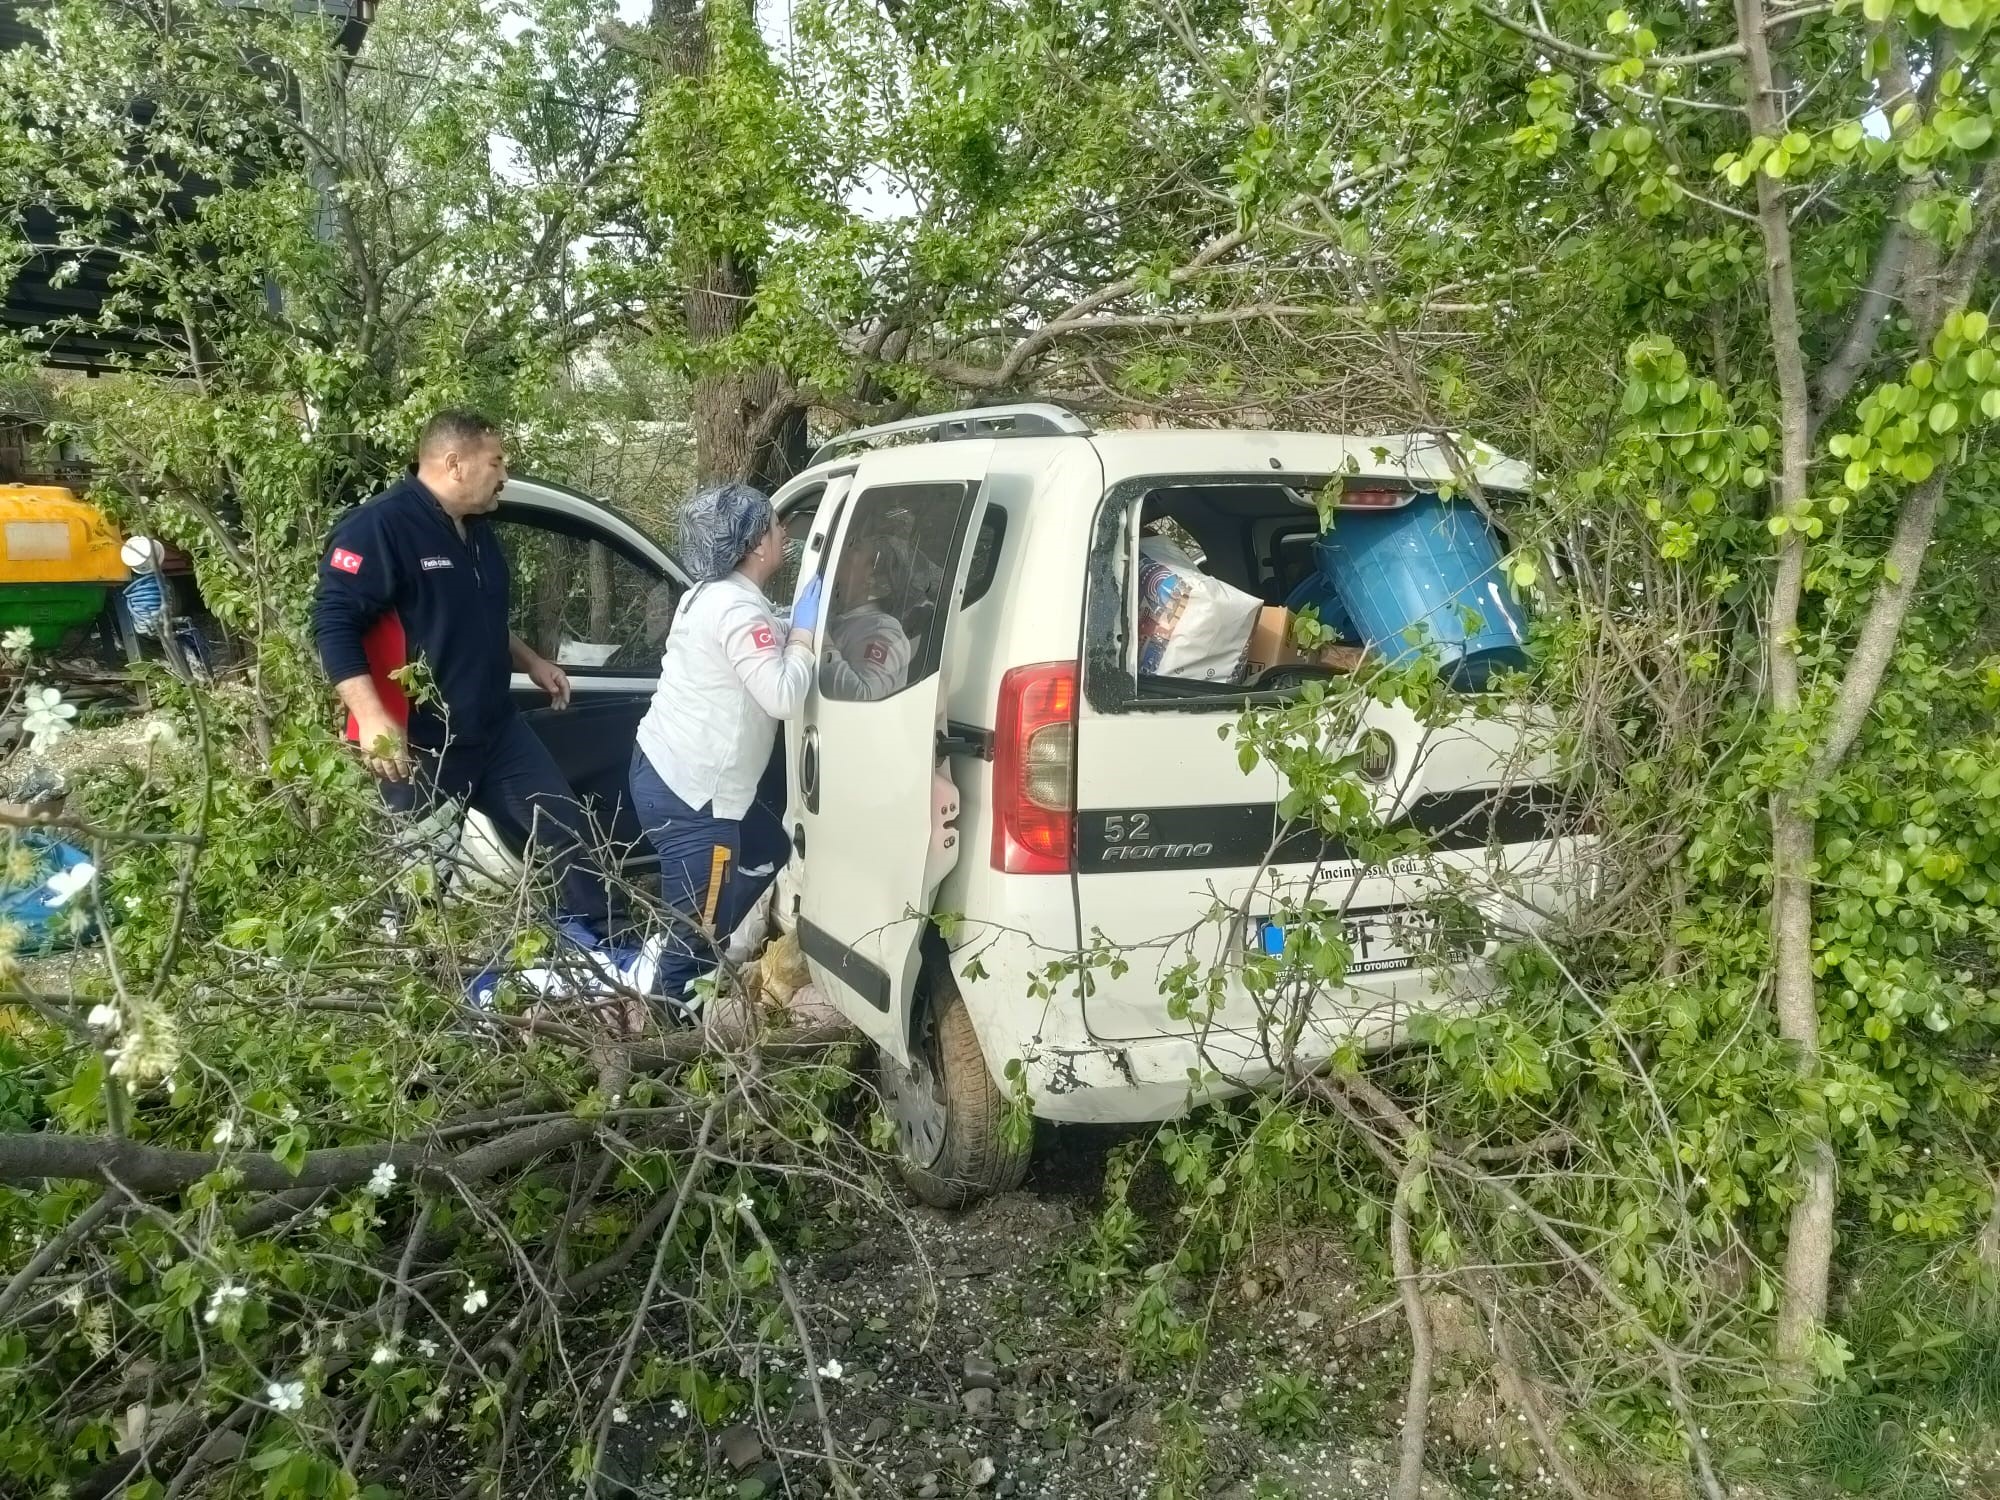 Otomobil virajı alamayarak ağaca çarparak durabildi: Aynı aileden 3 kişi yaralandı